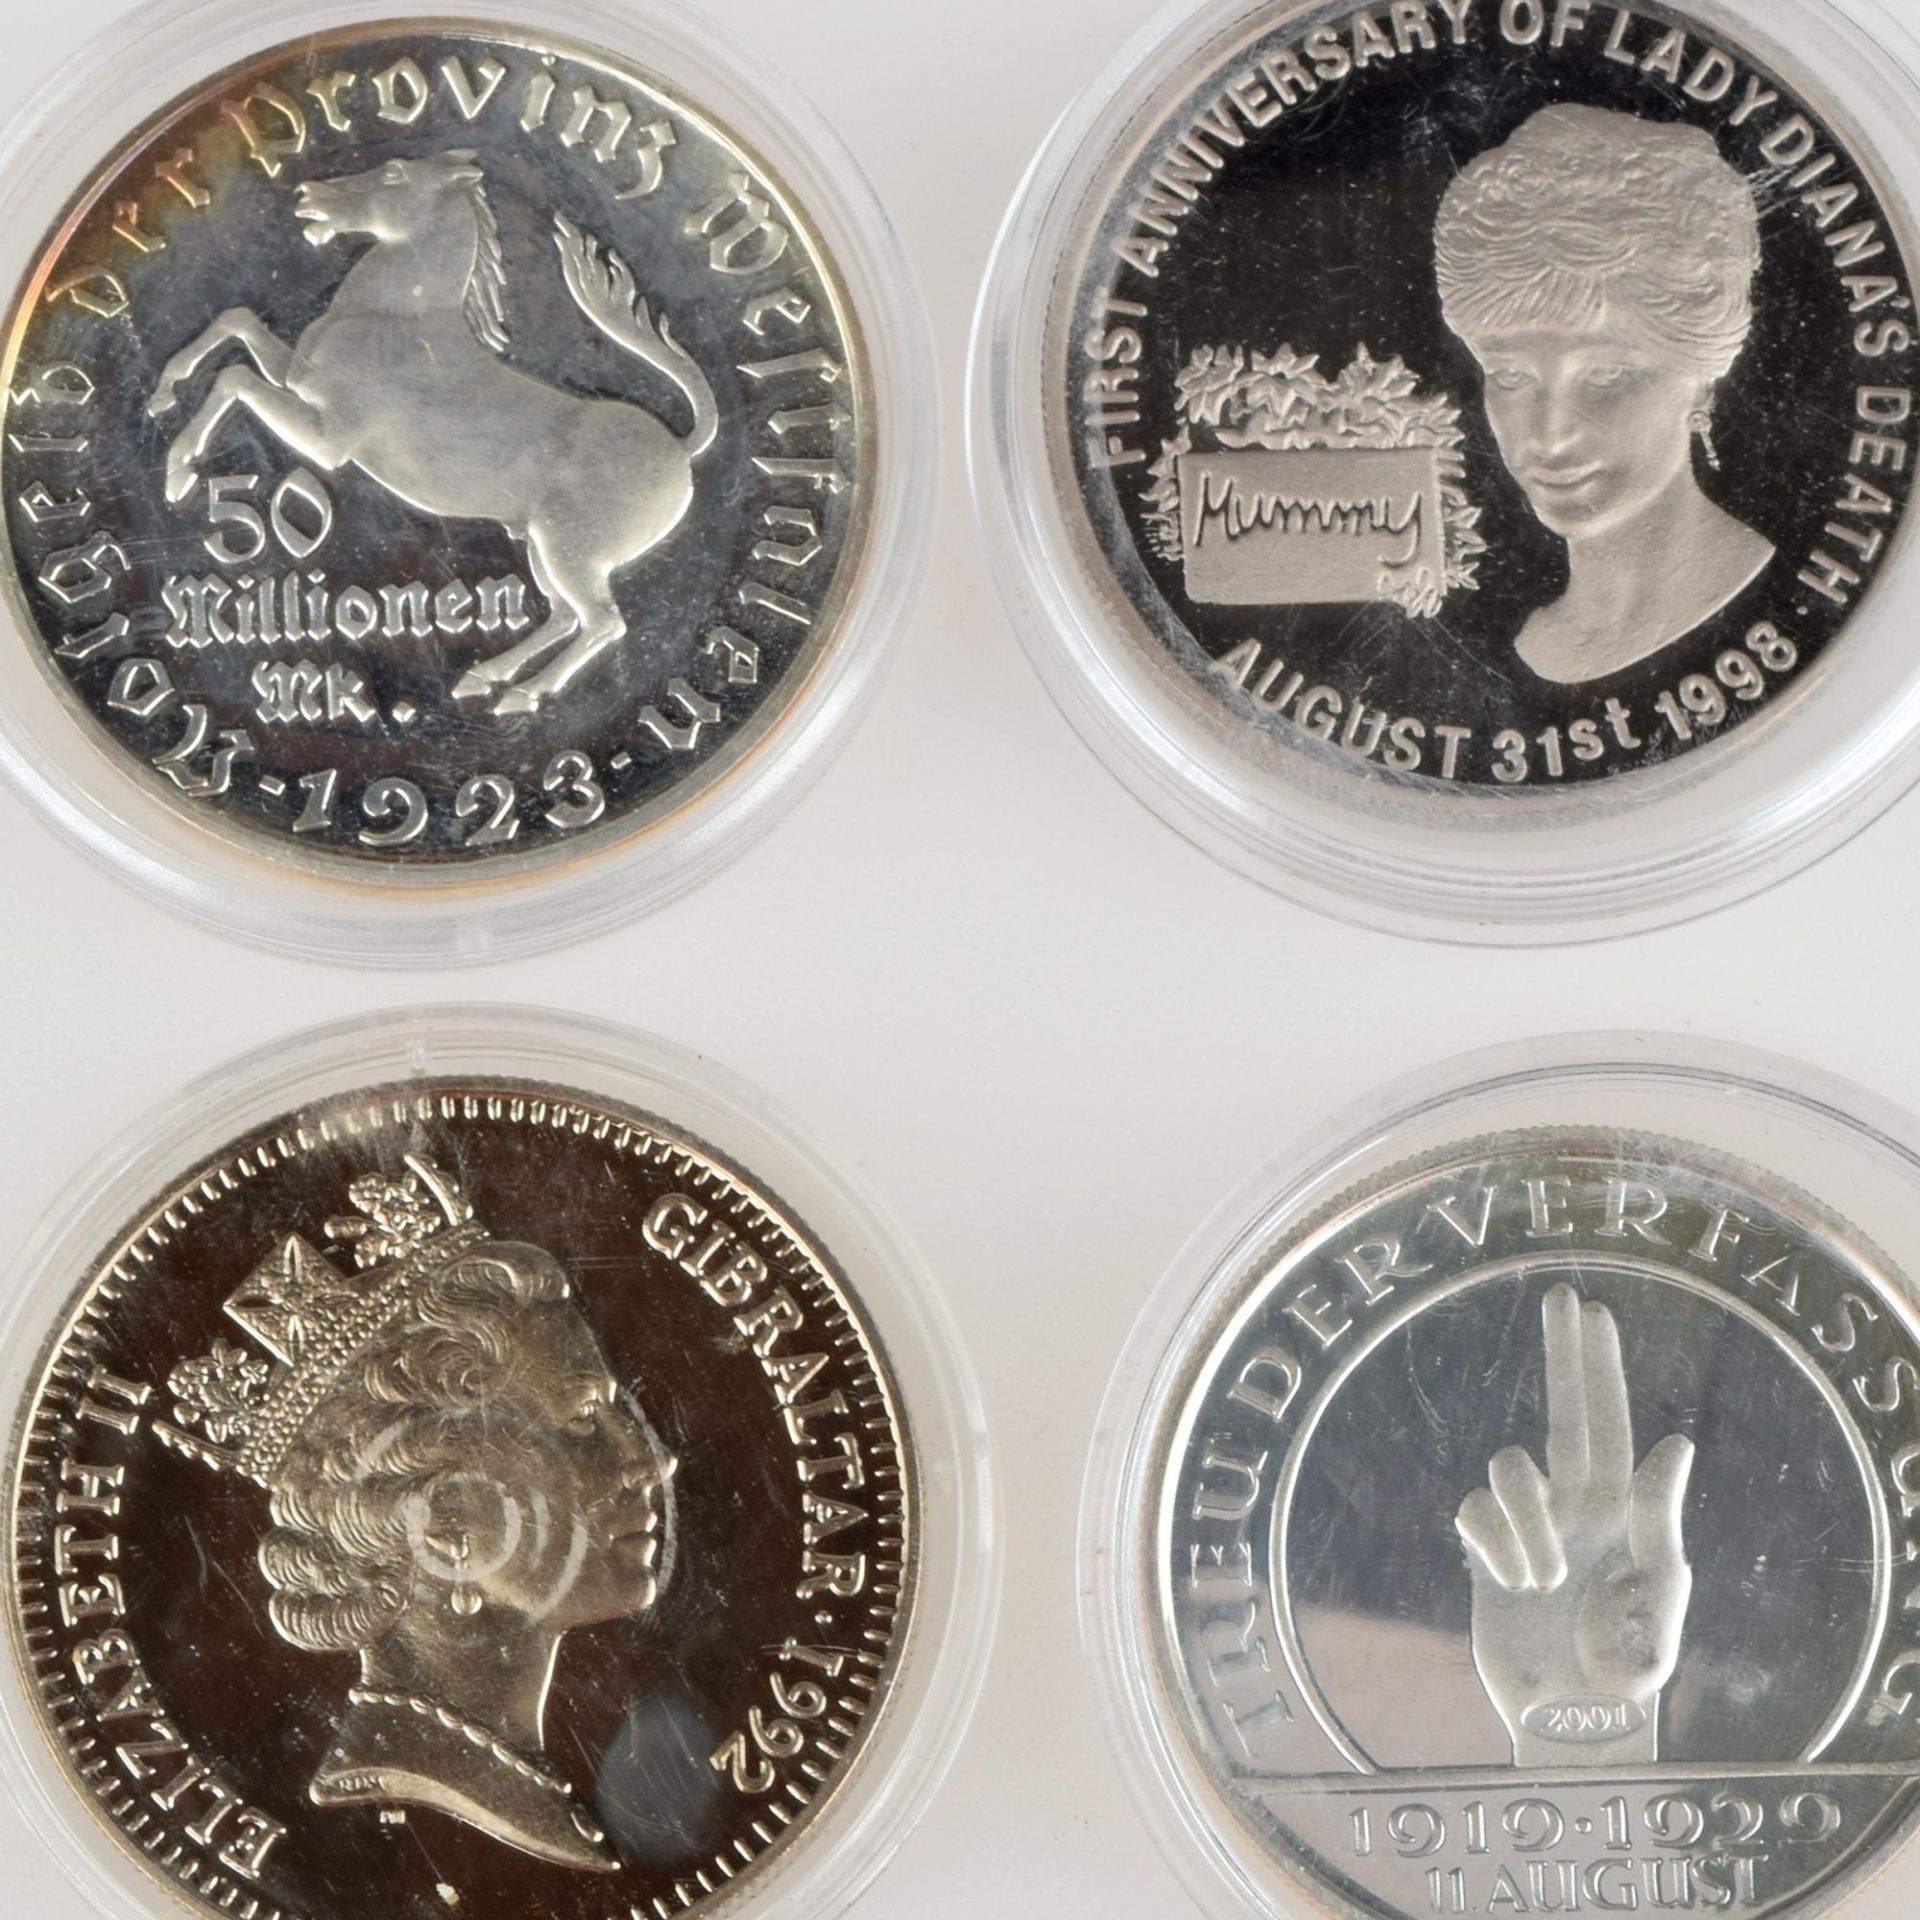 Konvolut Münzen bzw. Gedenkprägungen insg. 4 versch. Ausgaben, 1 x 2 Pfund - 2,8 Ecus Gibraltar